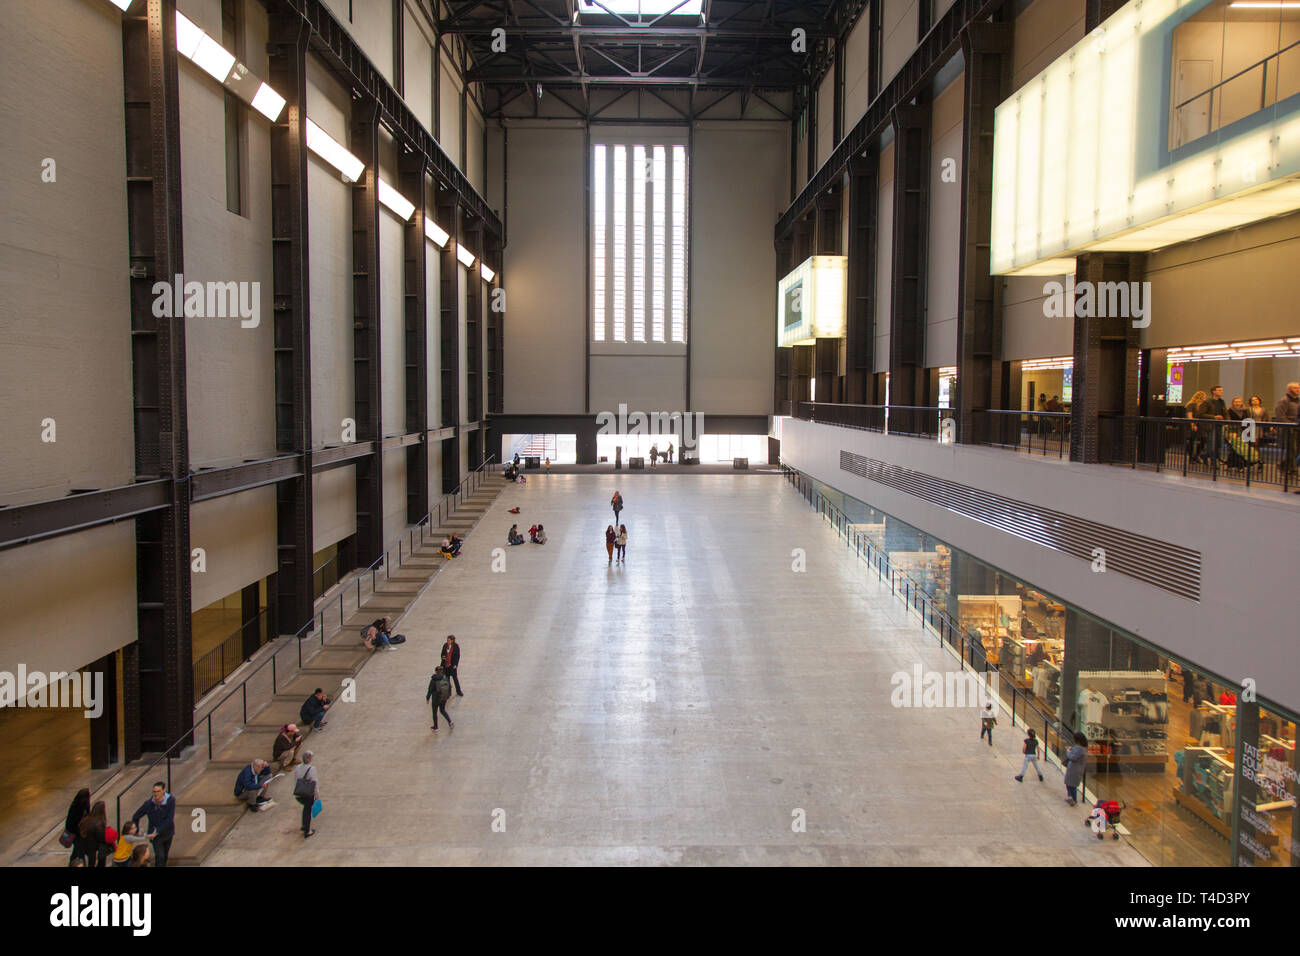 Le Turbine Hall de la Tate Modern de Londres, Angleterre, Royaume-Uni. Banque D'Images